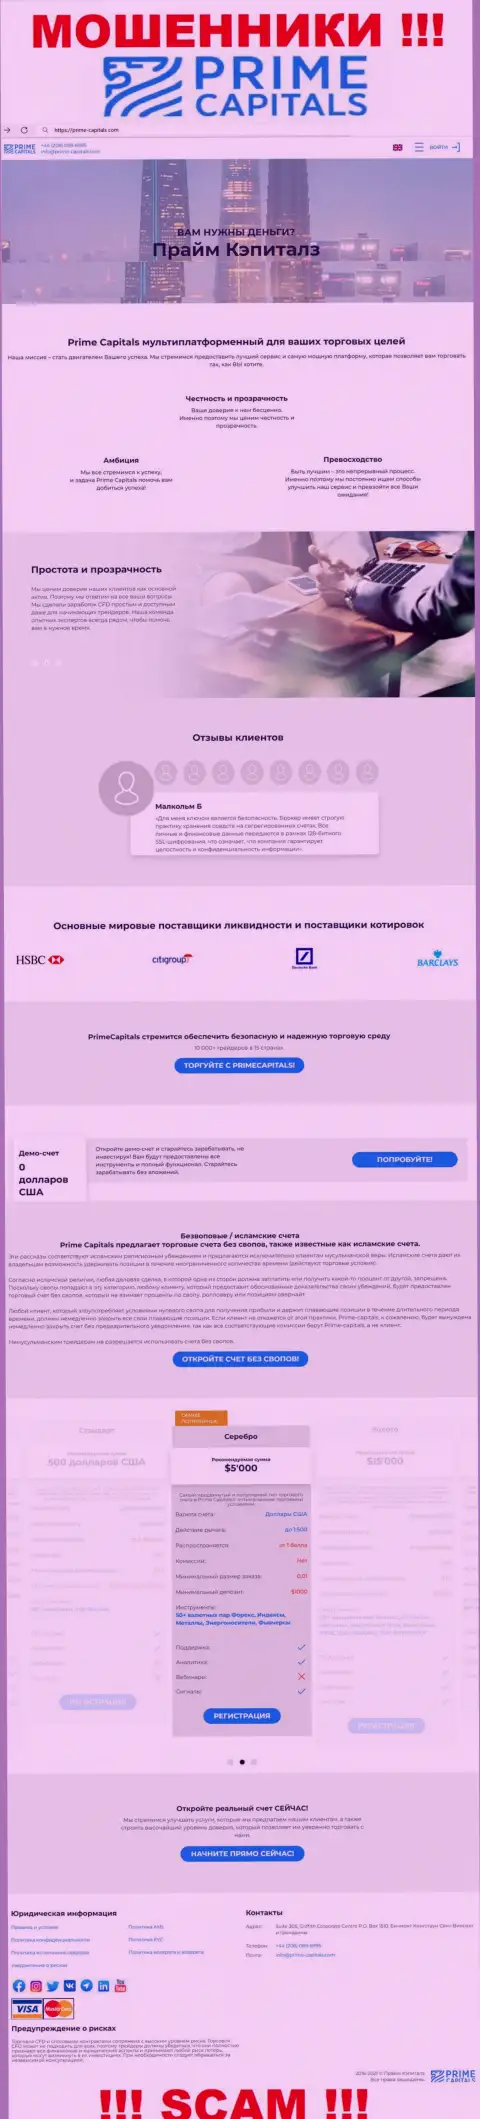 Официальный сайт мошенников Прайм-Капиталс Ком